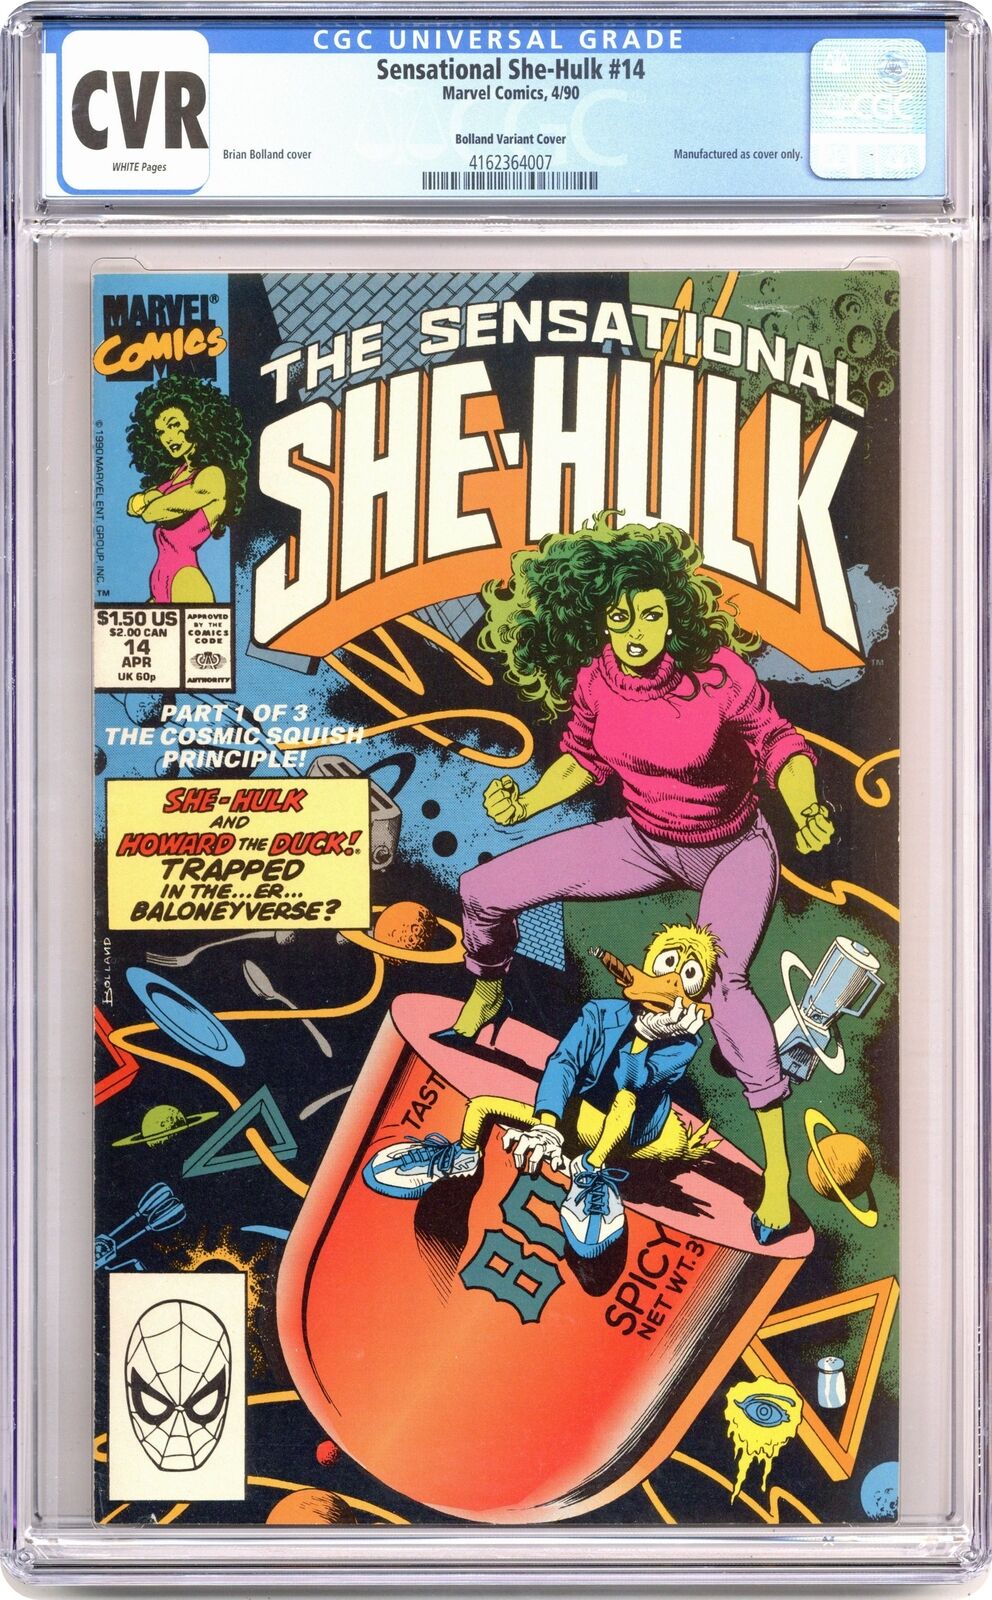 Sensational She-Hulk (1989) Bolland Cover 14 CGC CVR Bolland Variant Cover 